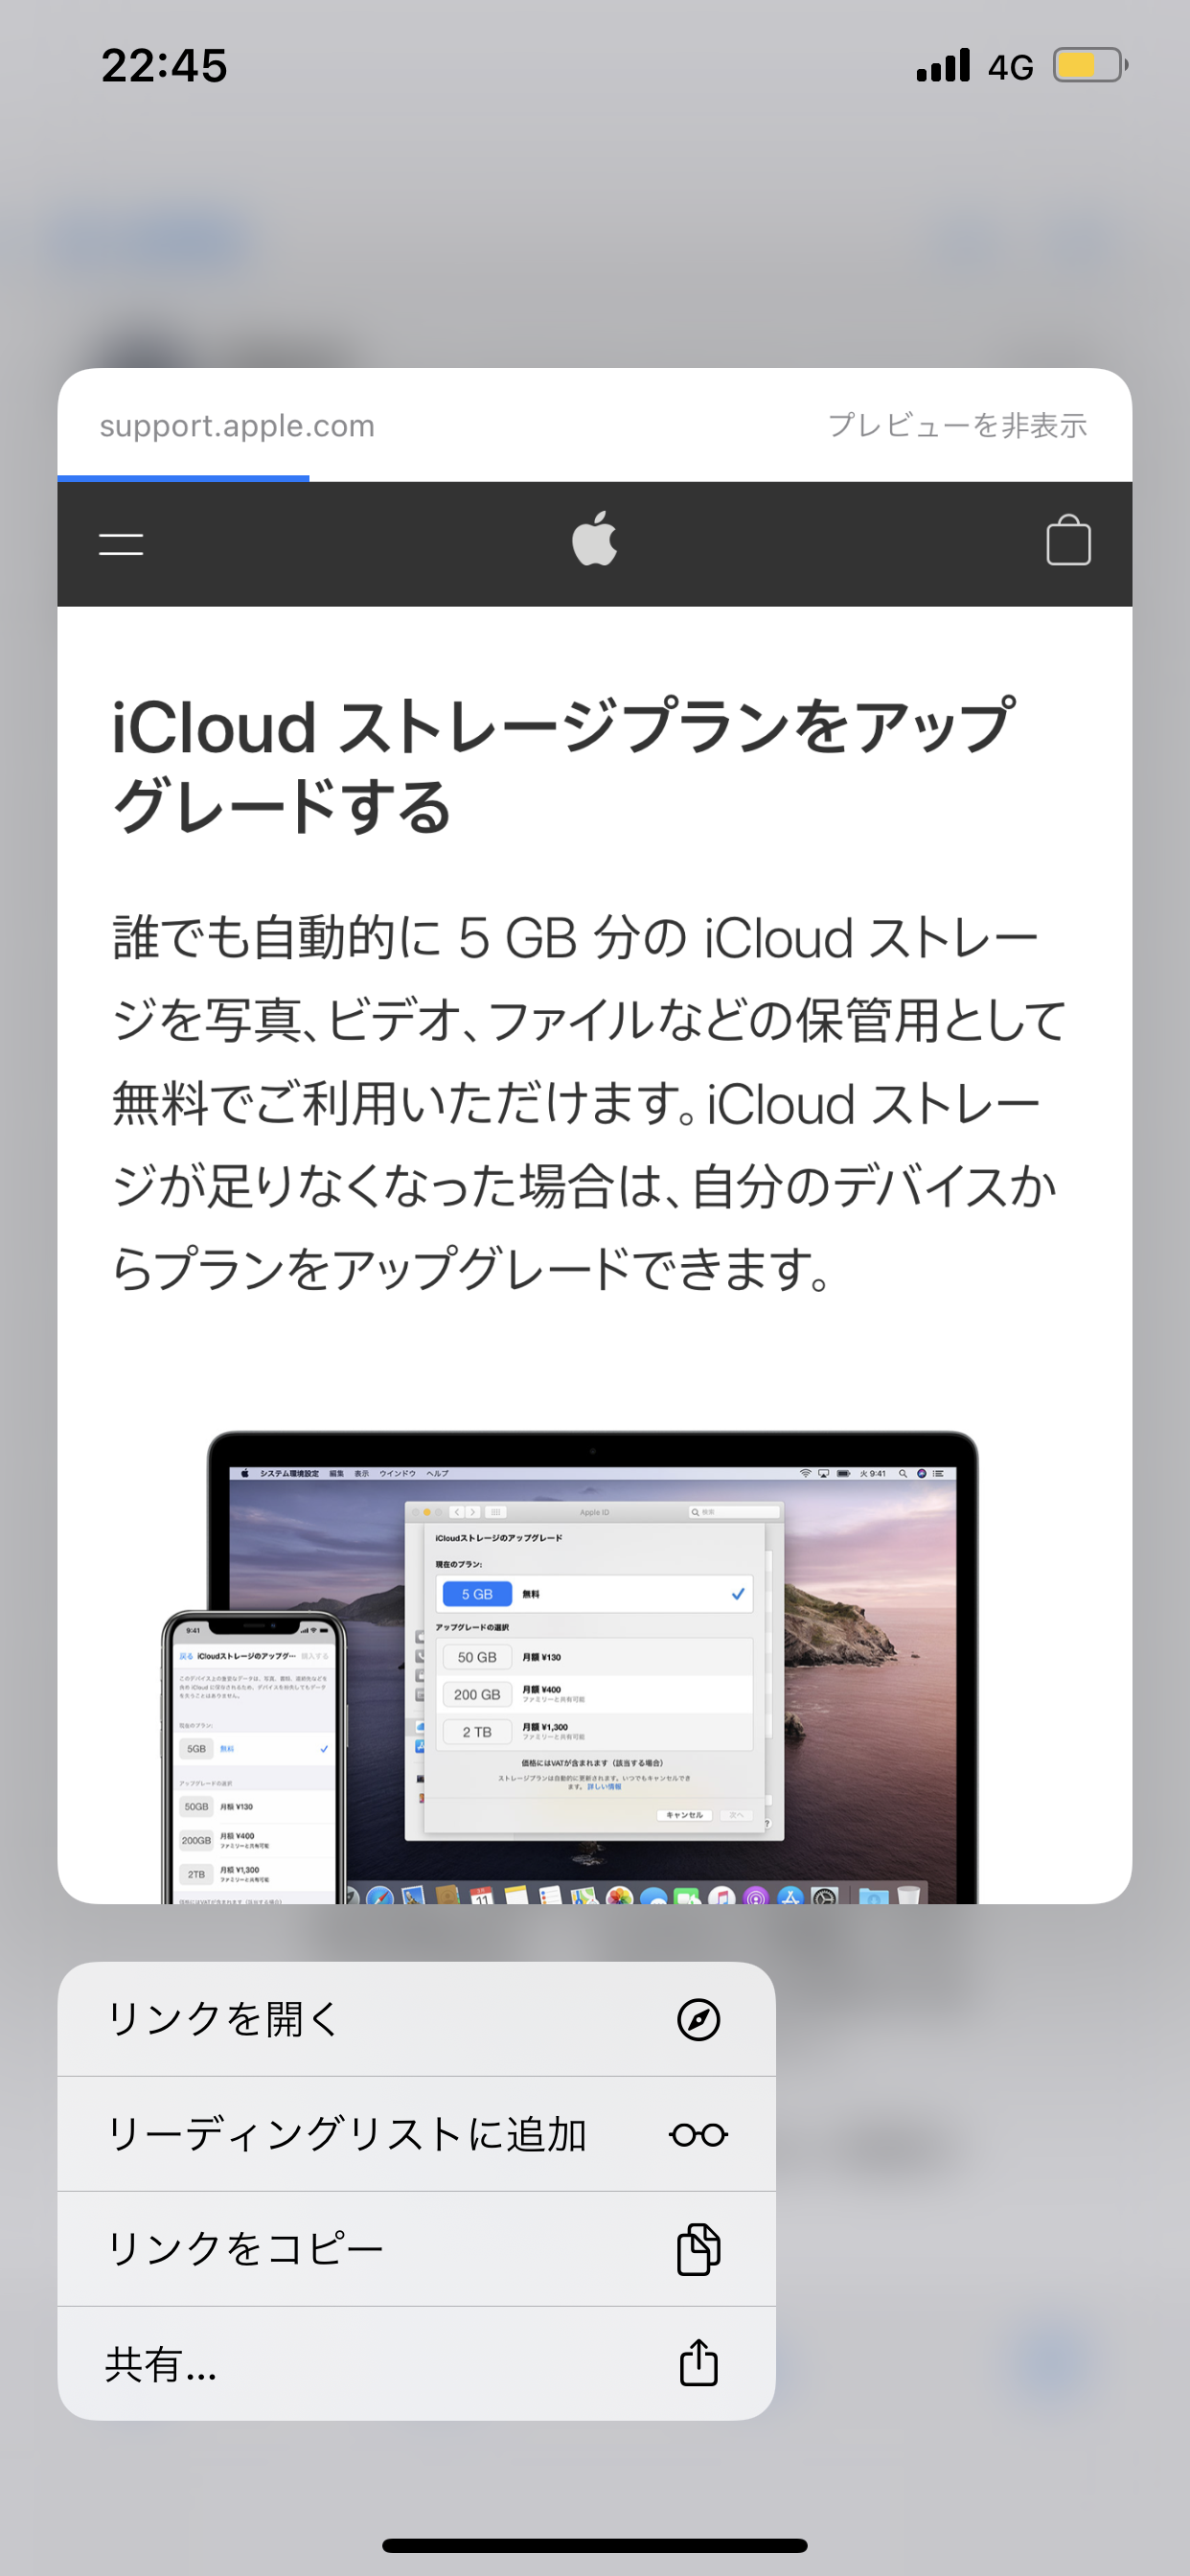 iCloud請求先更新について - Apple コミュニティ